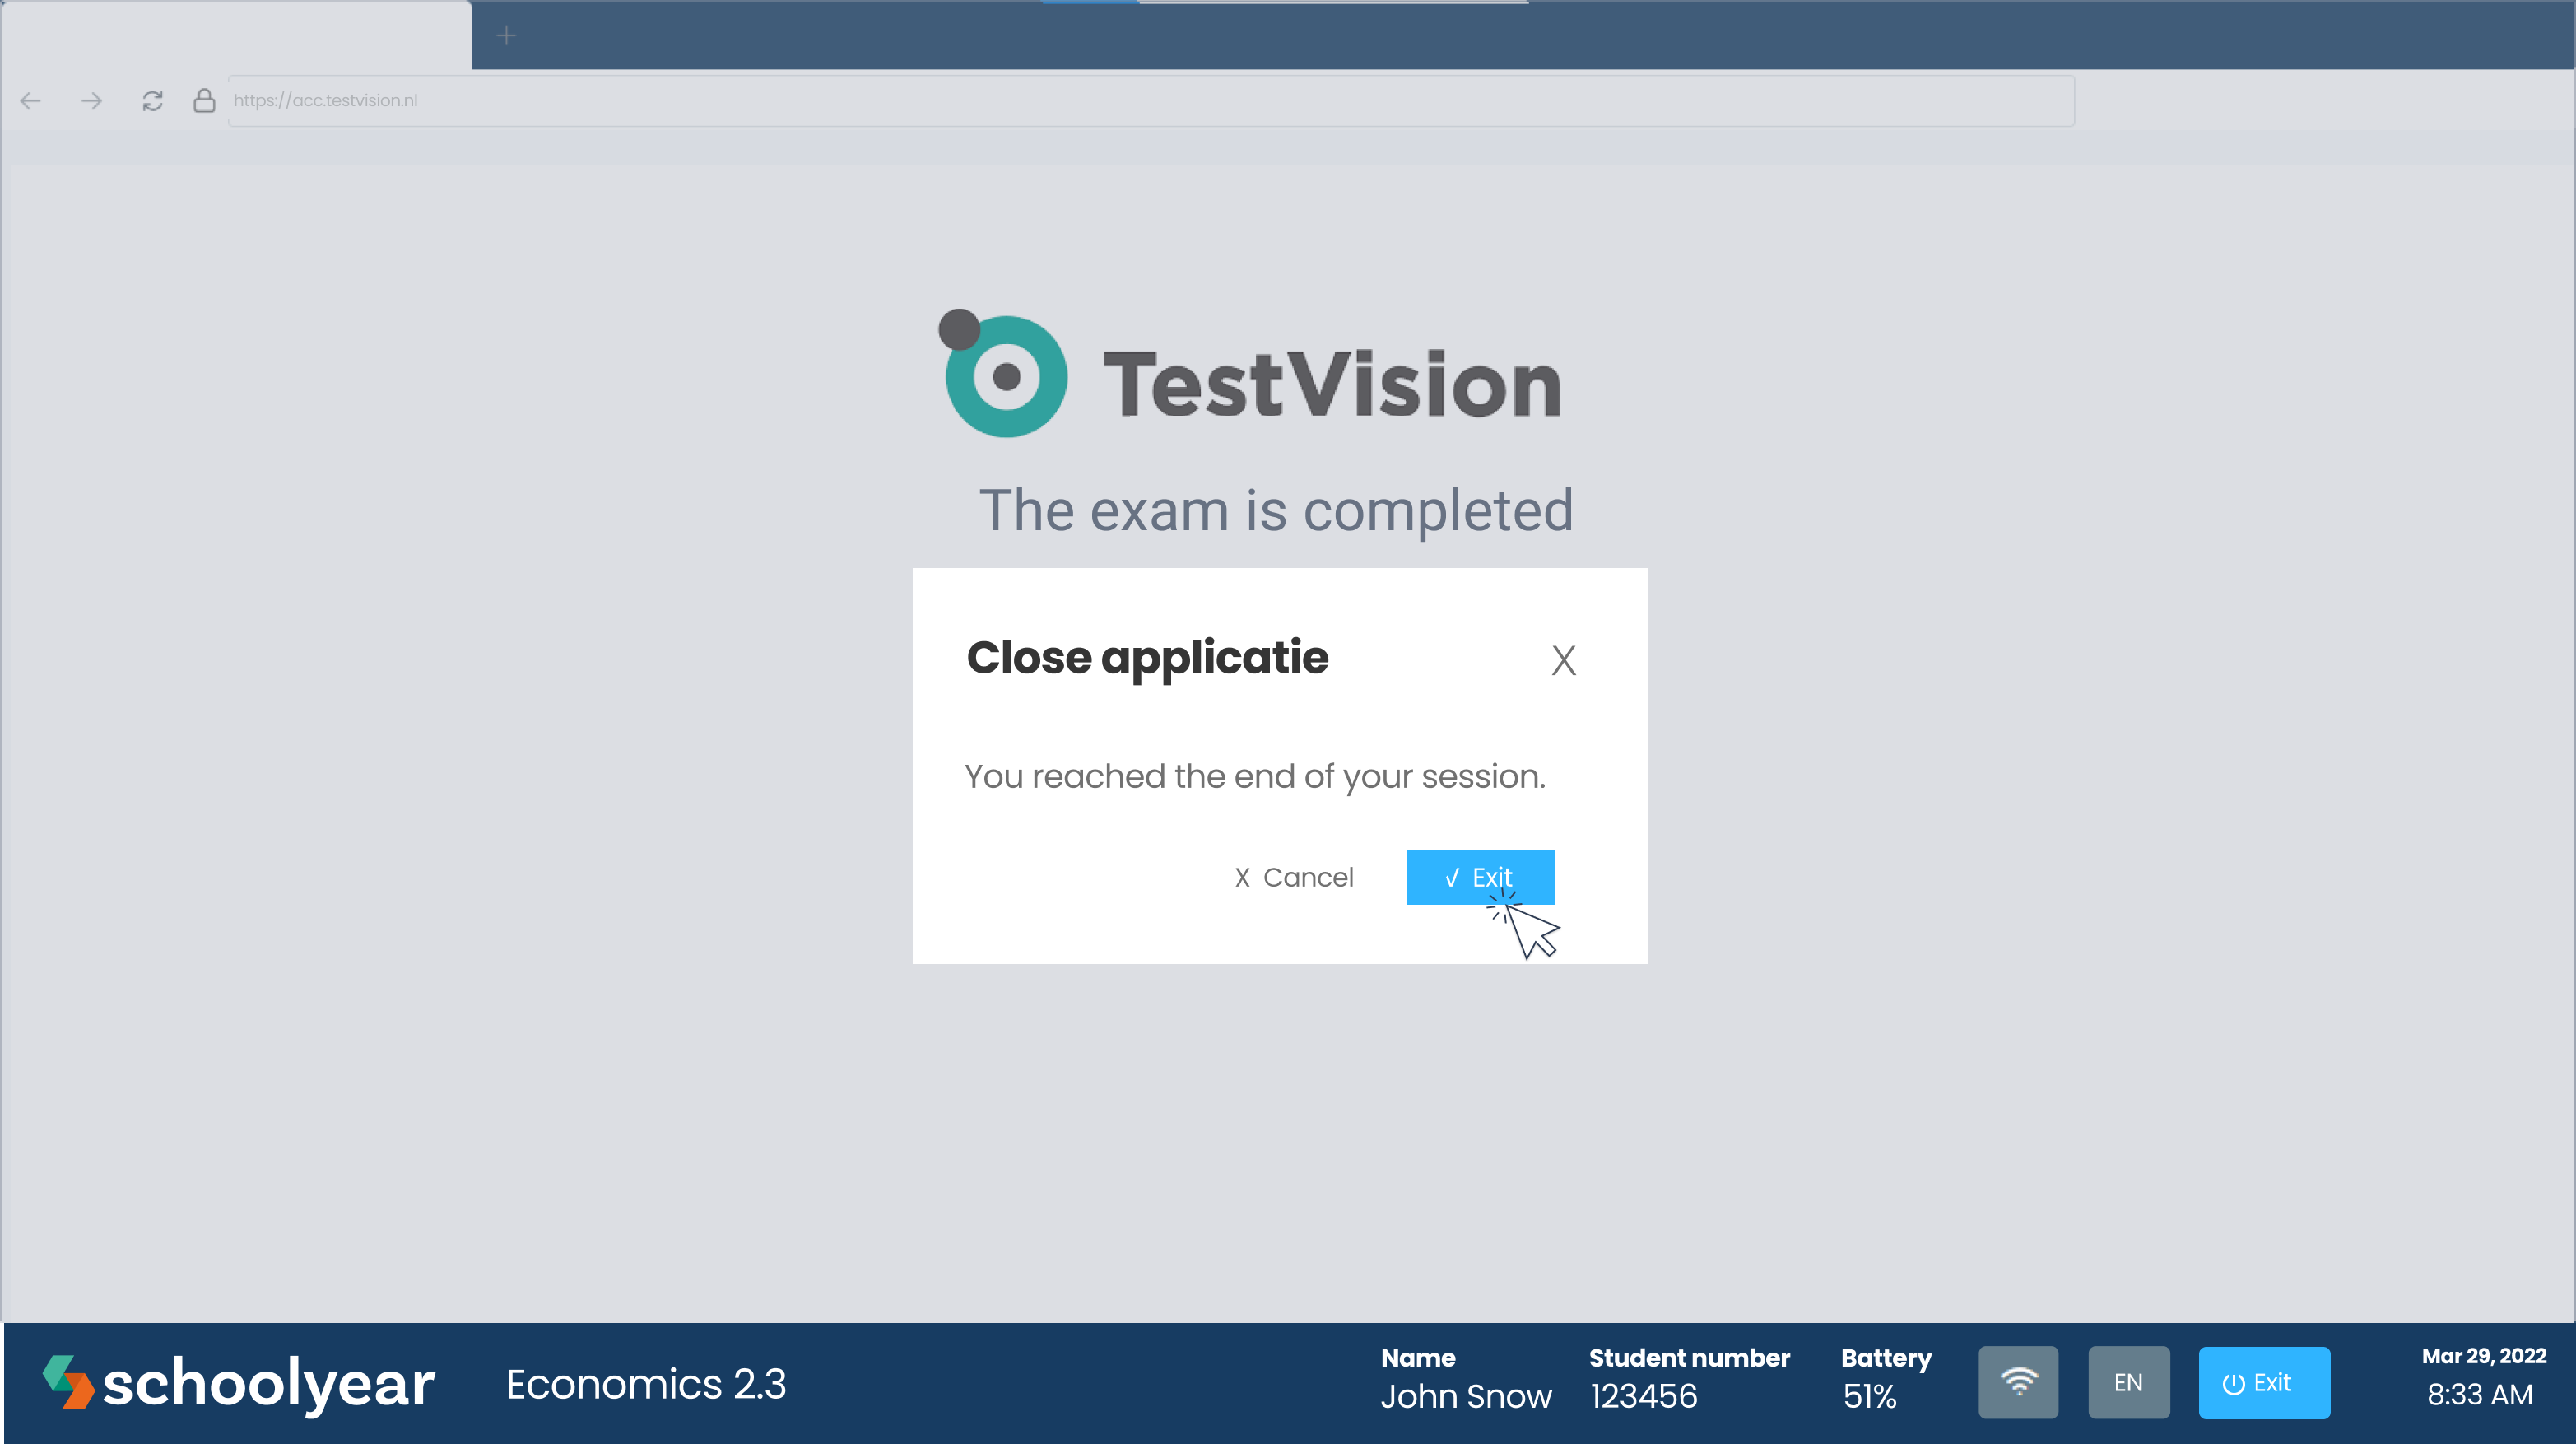 Take_exam_Testvision__EN_9.png